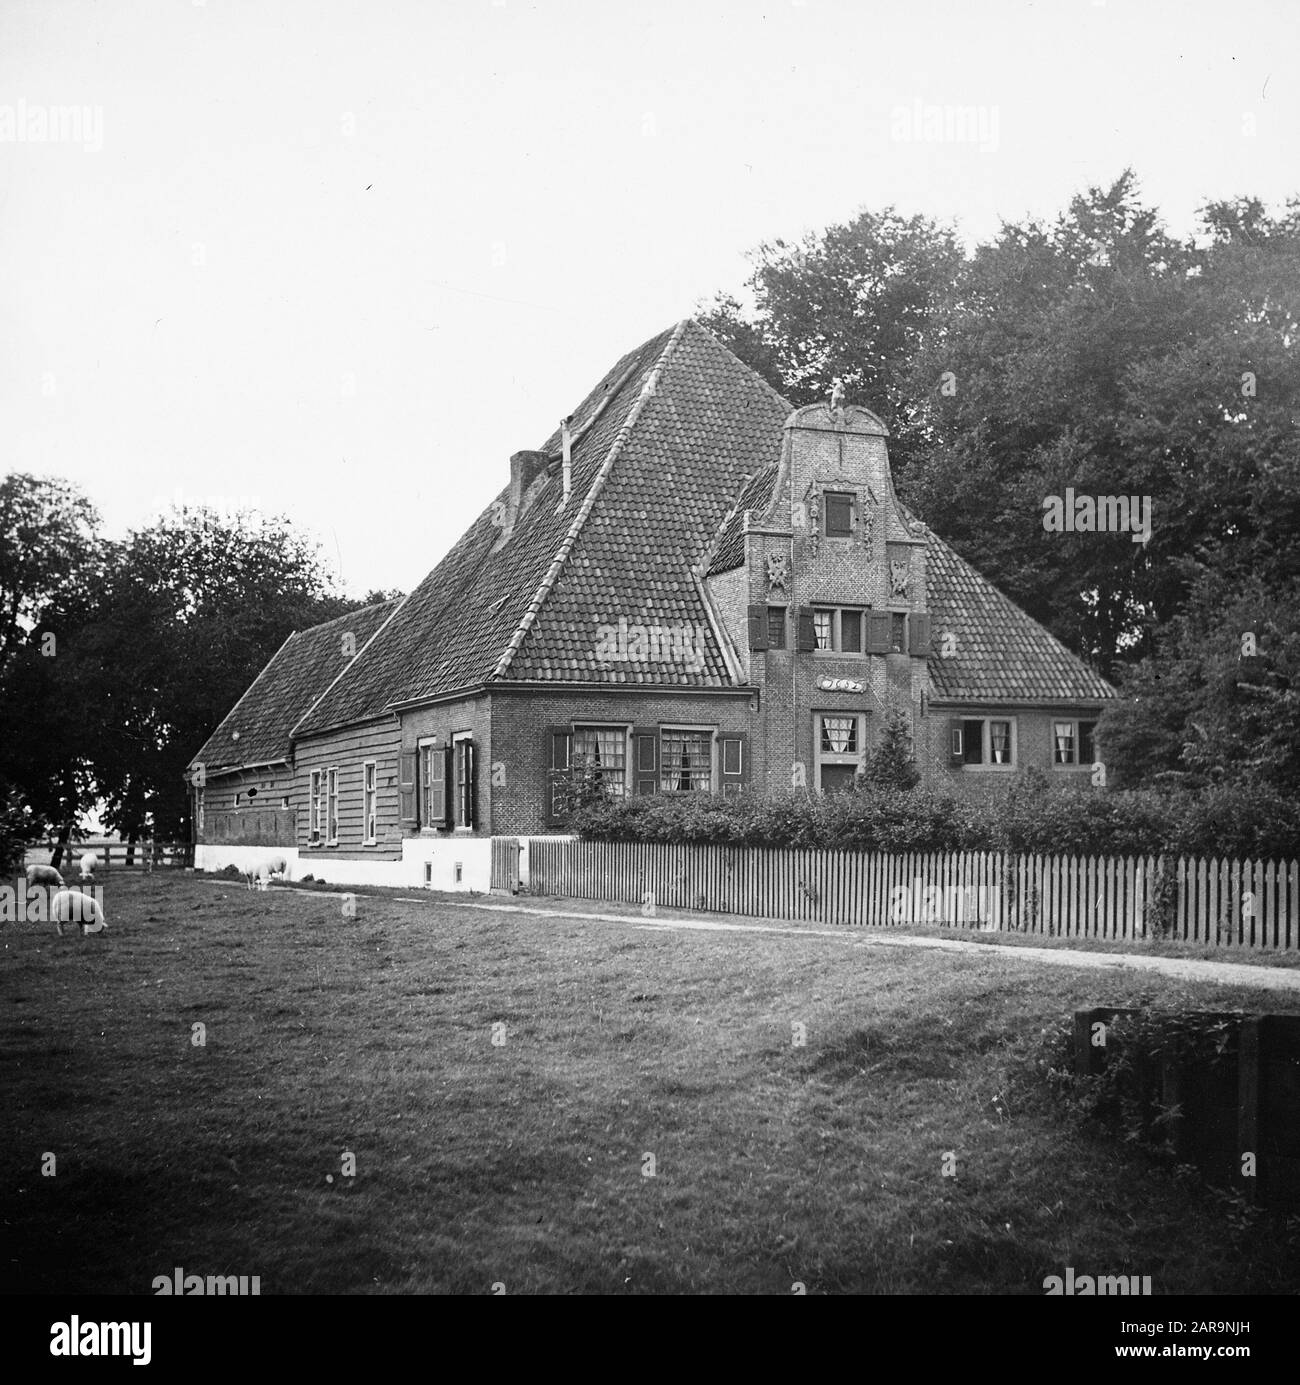 Noord-Hollandse stelphoeve (construit en 1682) à de Beemster Date: Non daté lieu: Beemster mots clés: Fermes, bâtiments agricoles modernes, maisons Banque D'Images